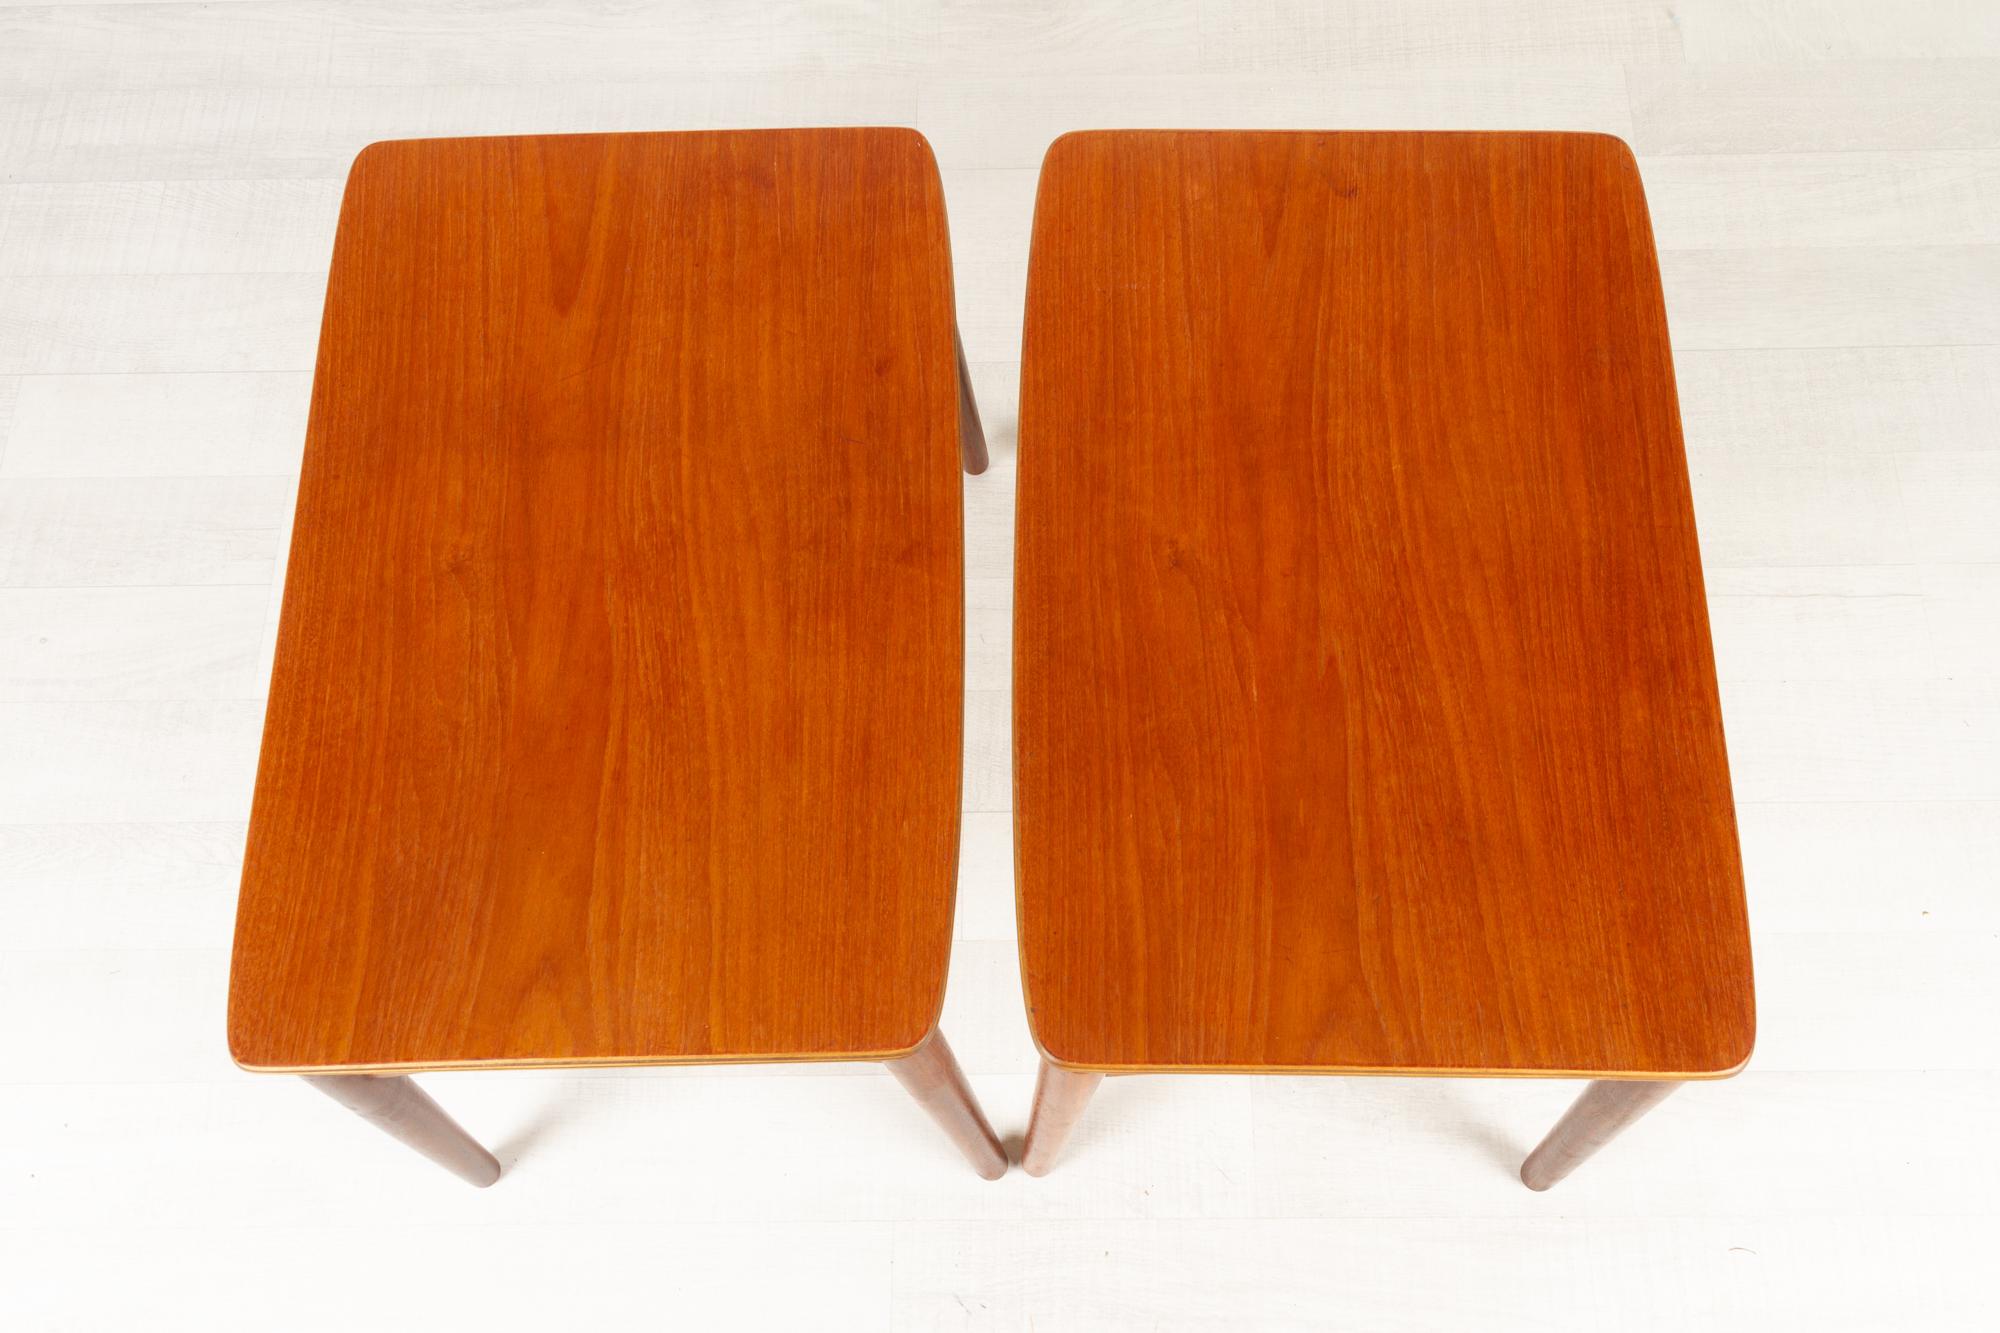 Vintage Danish Teak Footstools by Sigfred Omann for Ølholm 1950s Set of 2 For Sale 3